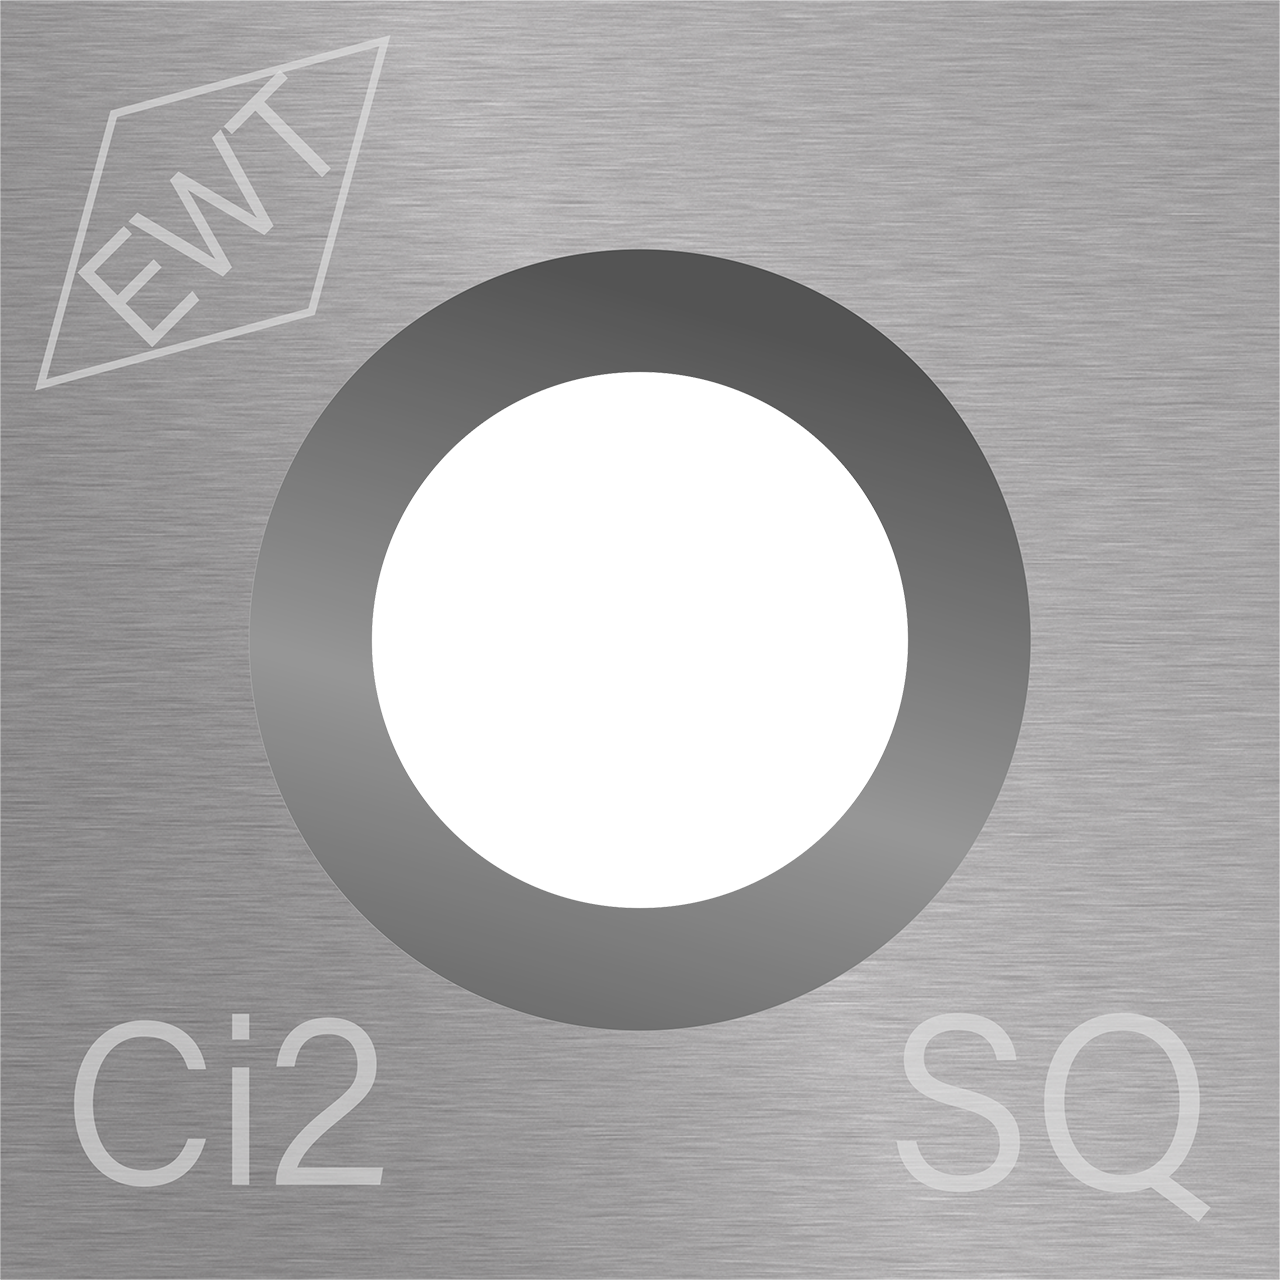 Ci2 Square Carbide Cutter Straight Edge